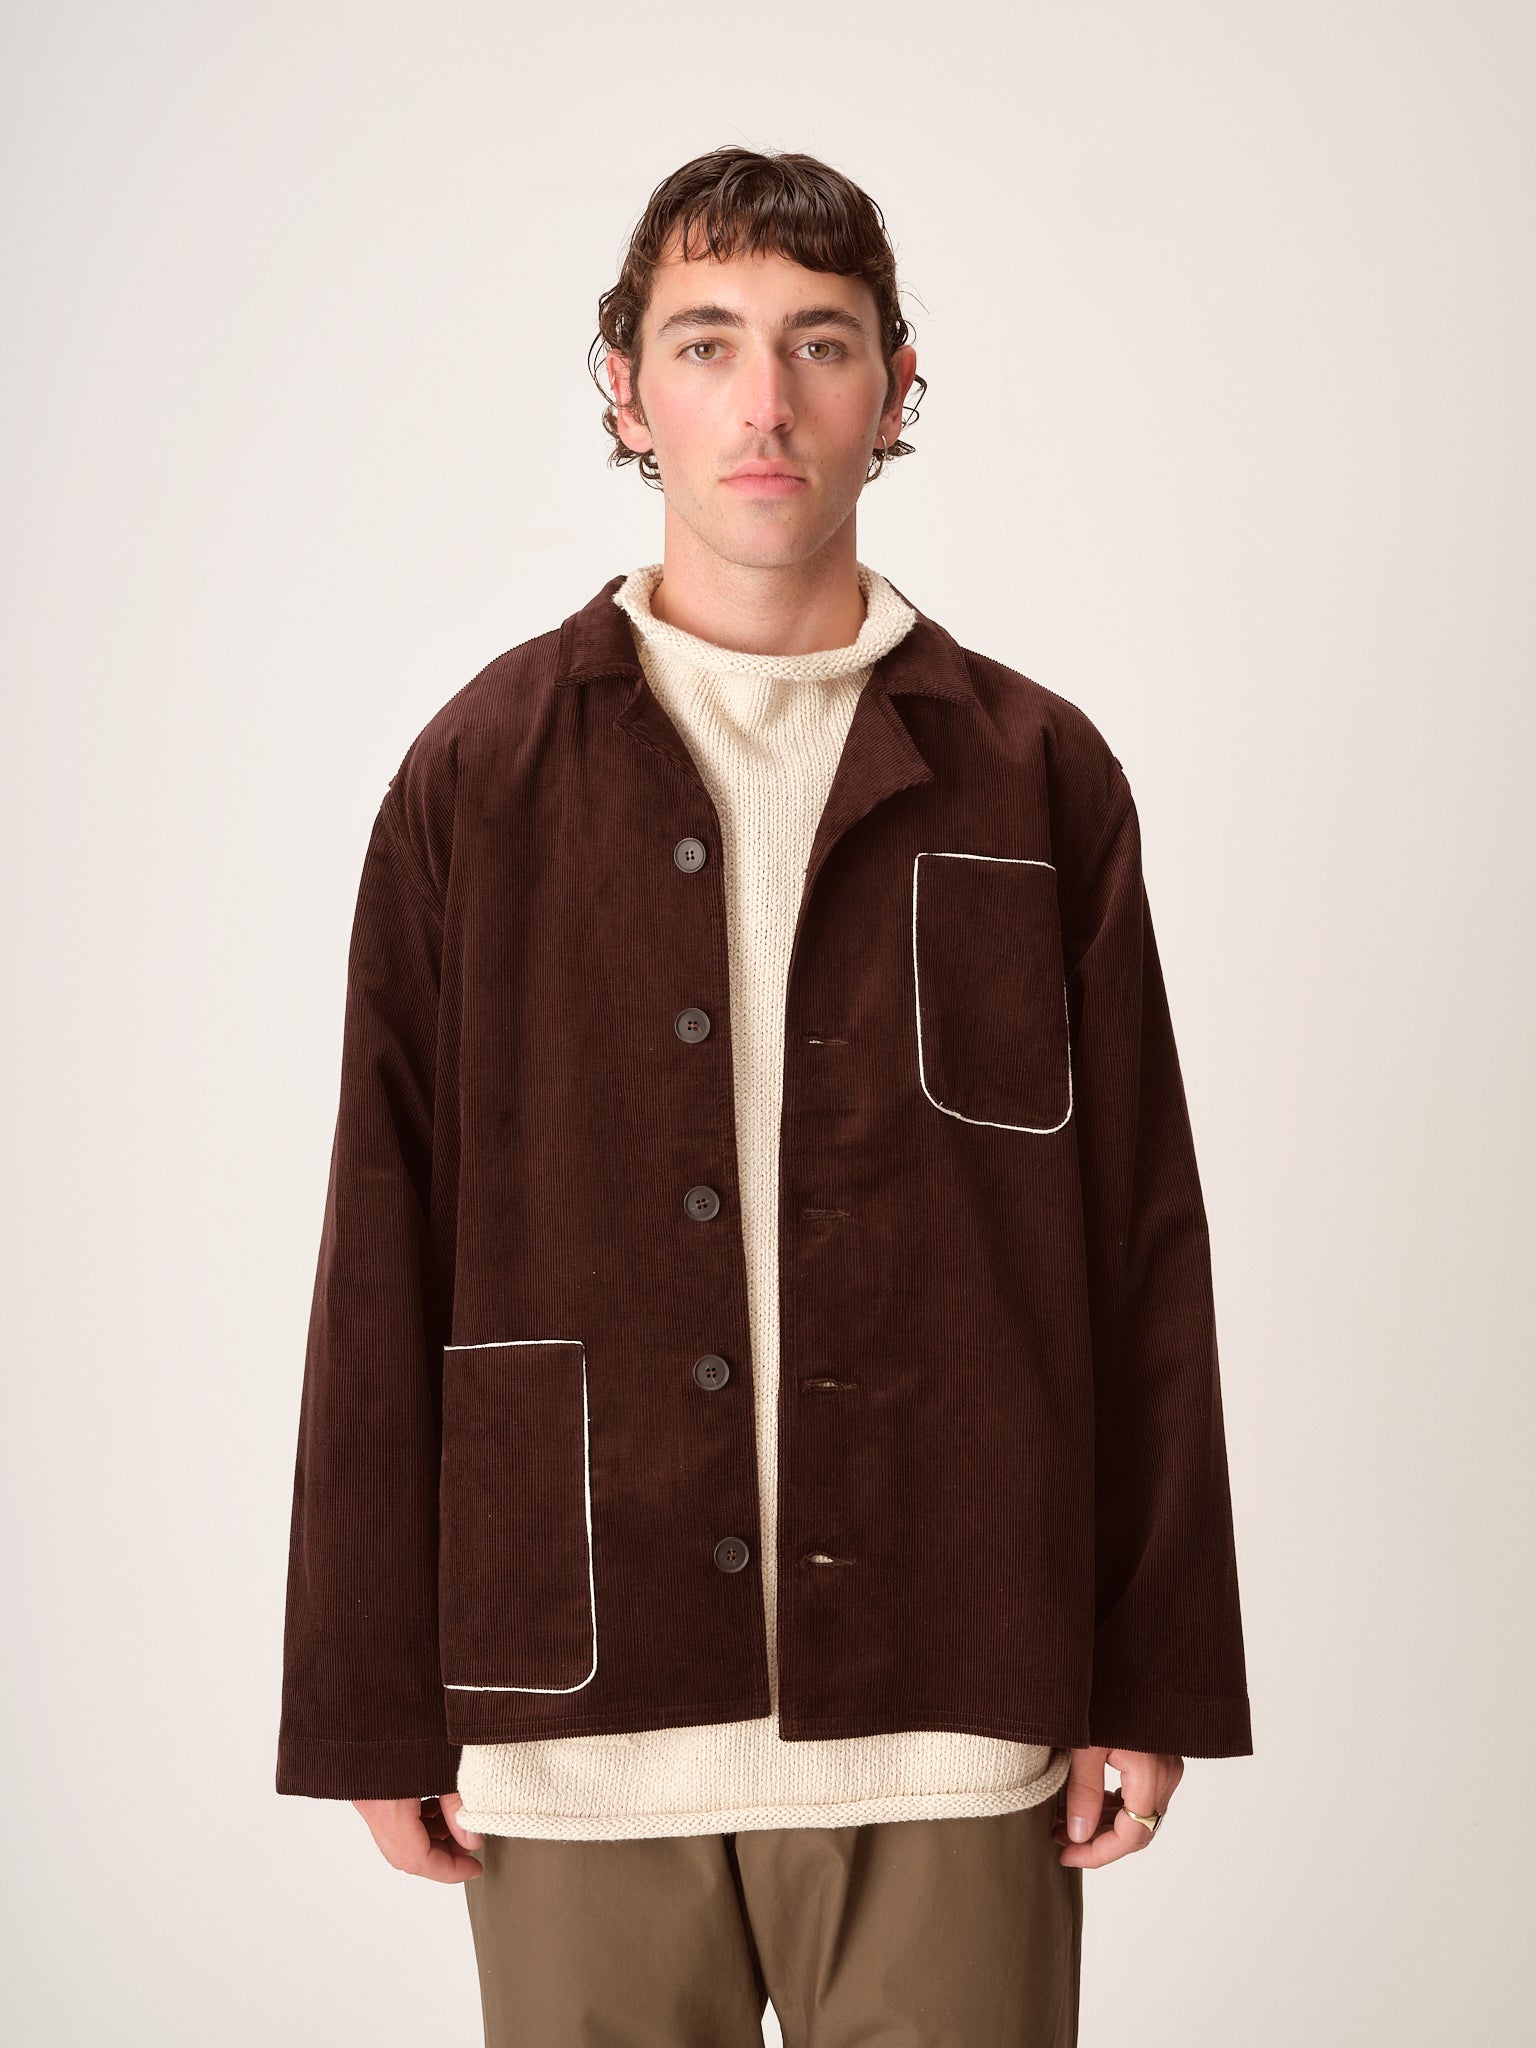 Vecher Jacket, Brown